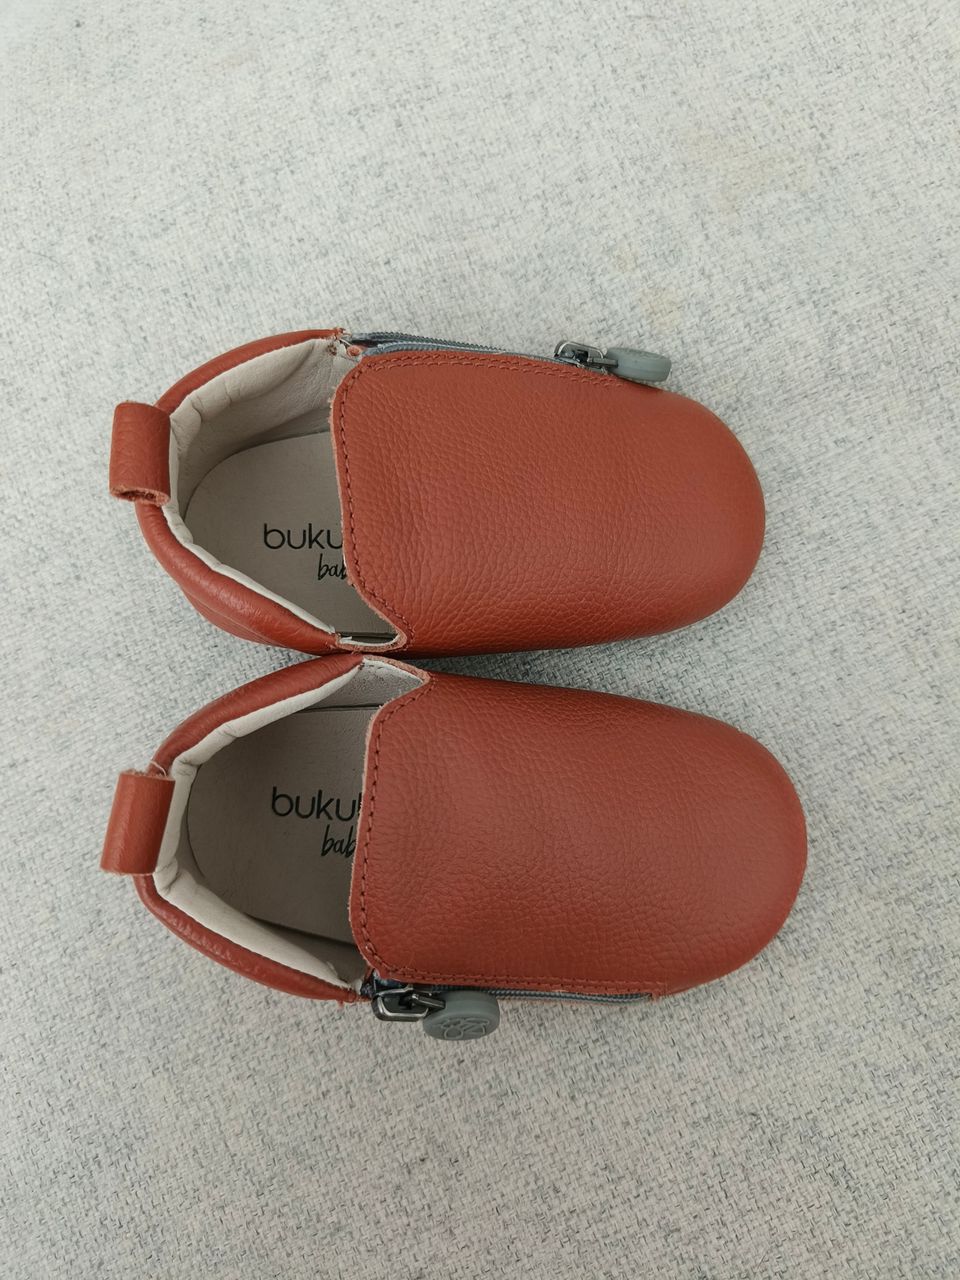 Vauvojen Bukubee- merkkiset kengät